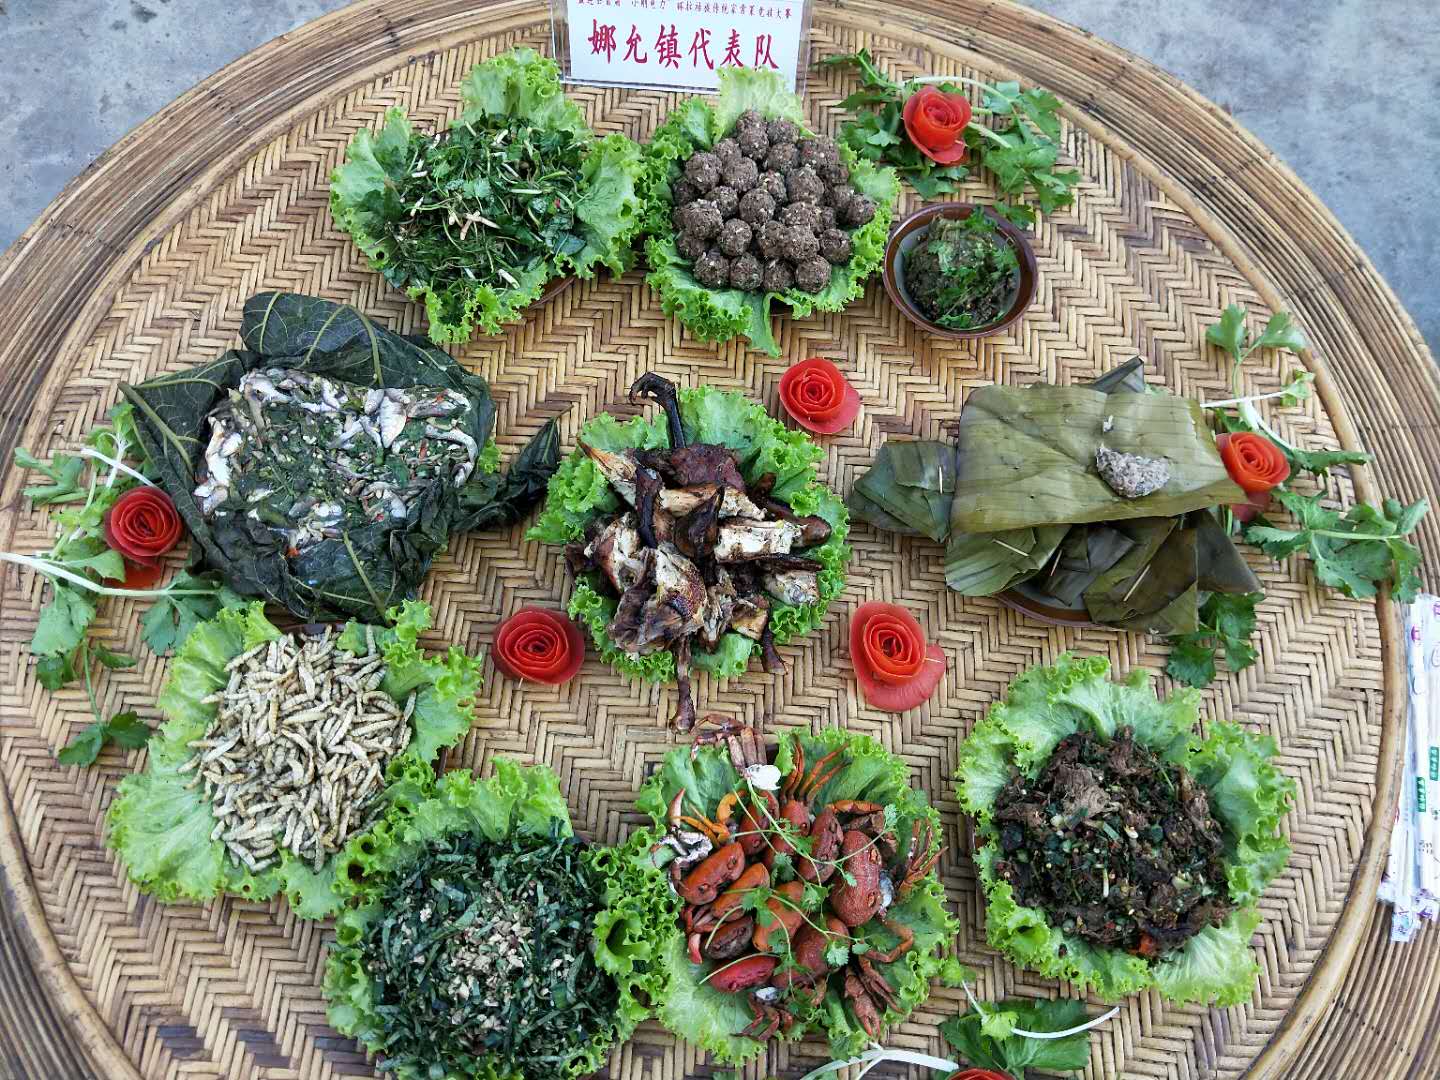 拉祜族特色美食 为孟连县拉祜族2017年葫芦节增香添色